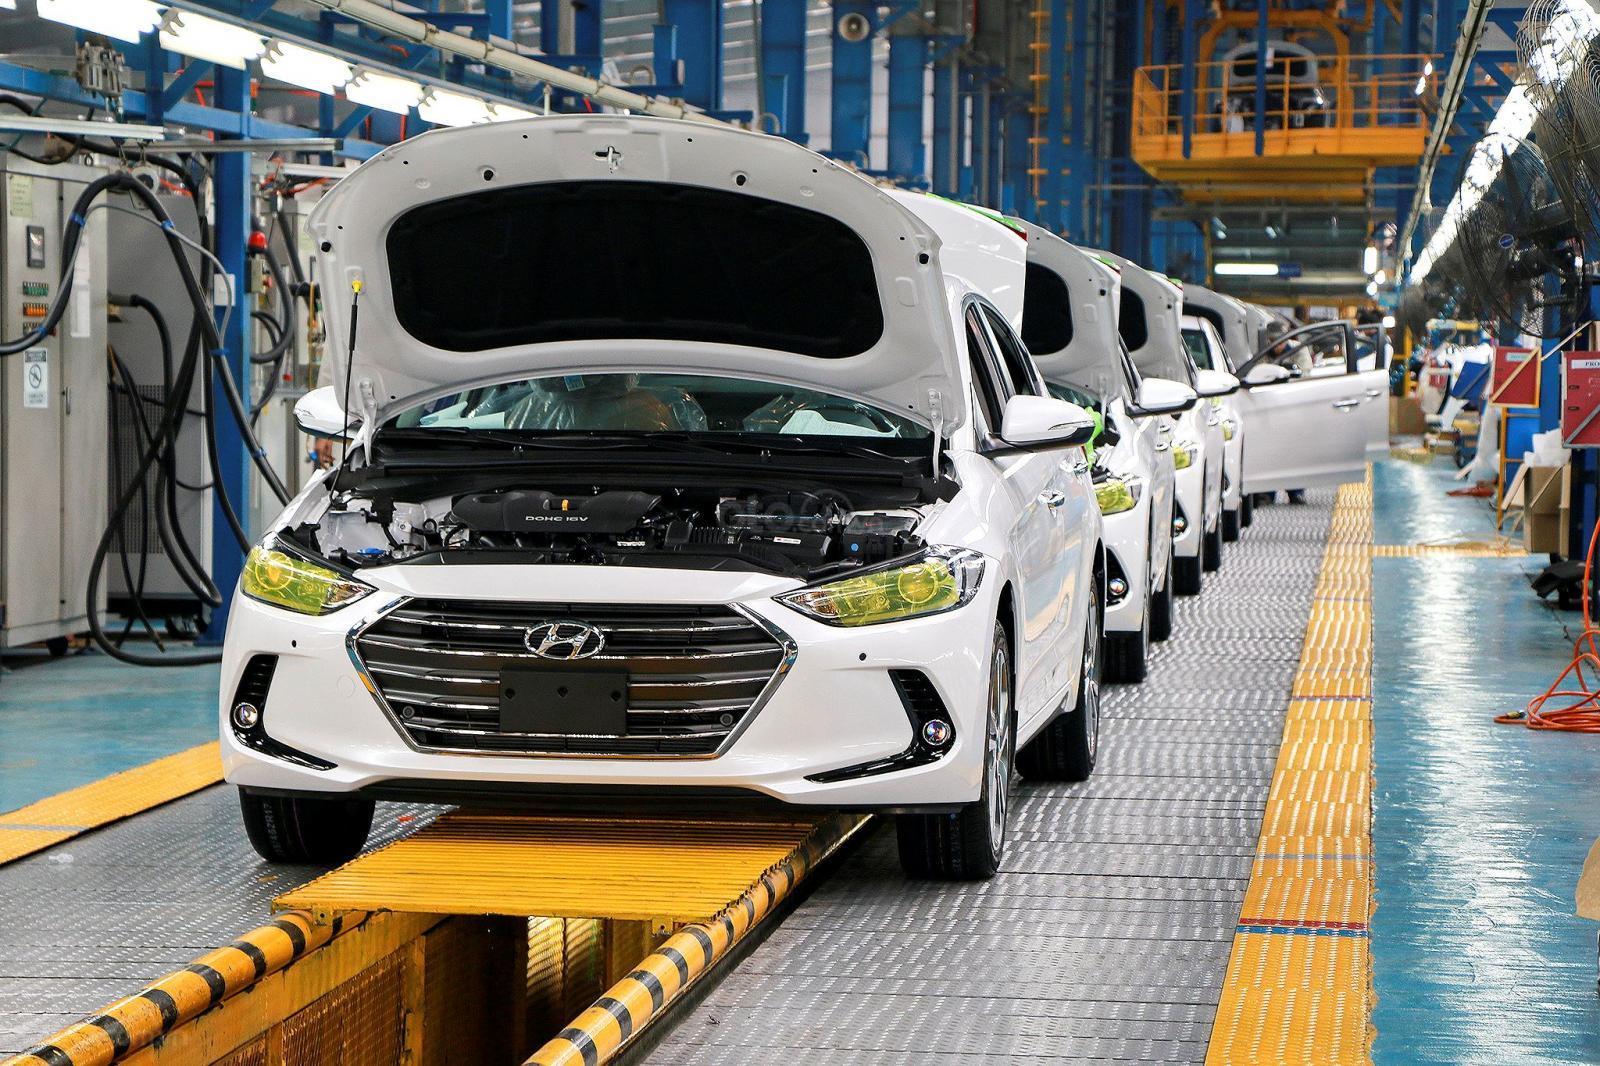 Hyundai Thành Công nỗ lực trở thành doanh nghiệp phân phối xe hàng đầu 